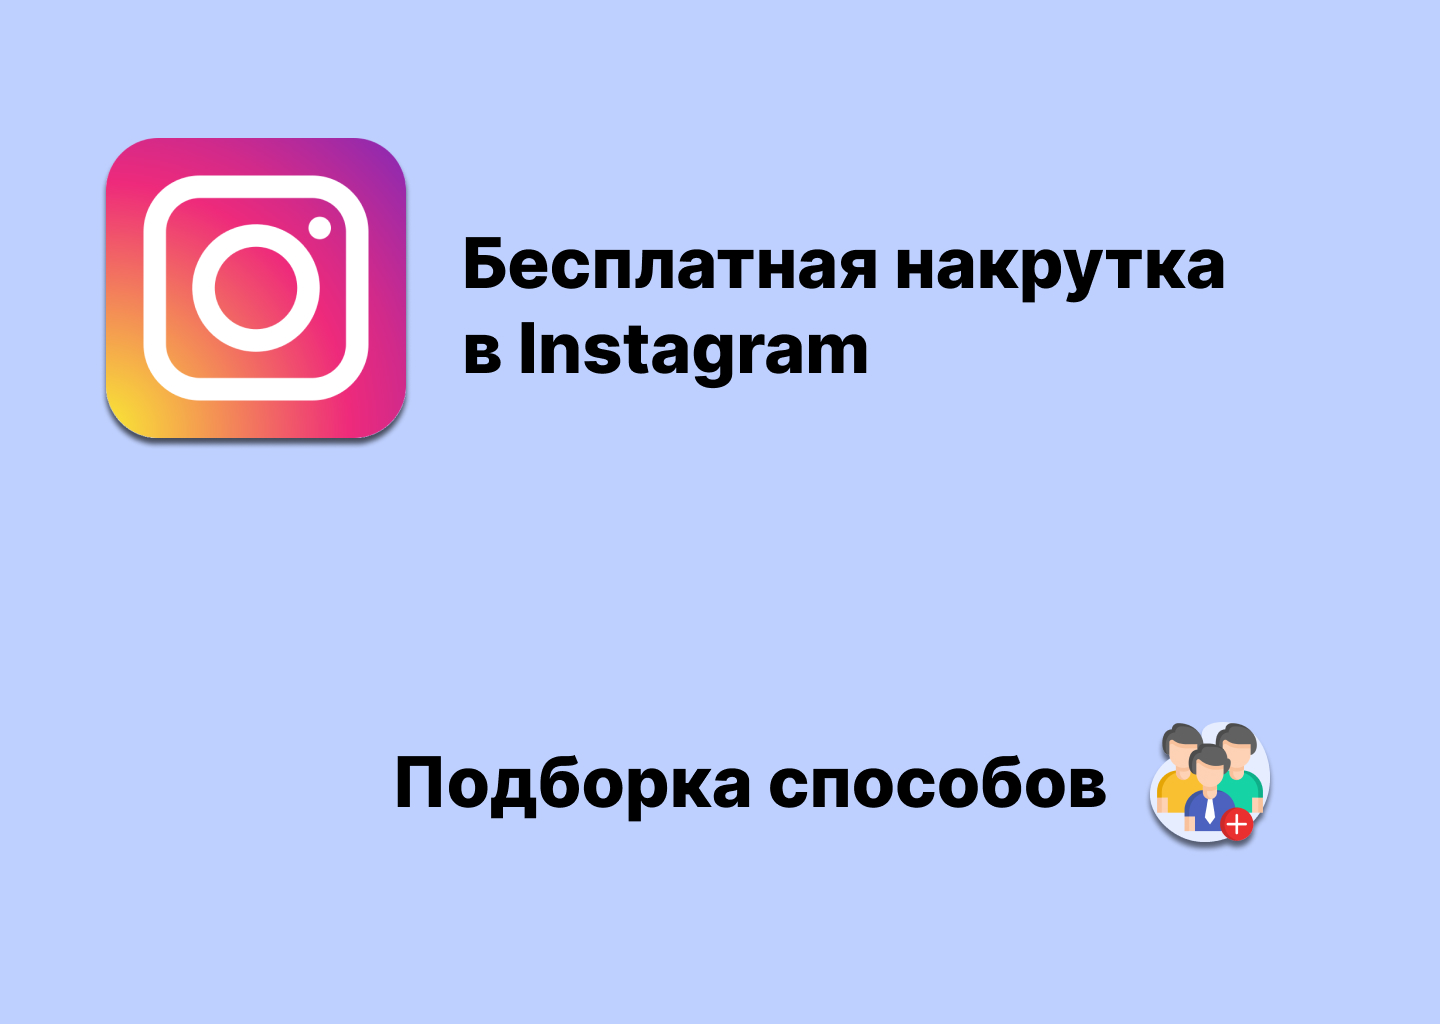 nakrutka-instagram-besplatno-podborka-sposobov